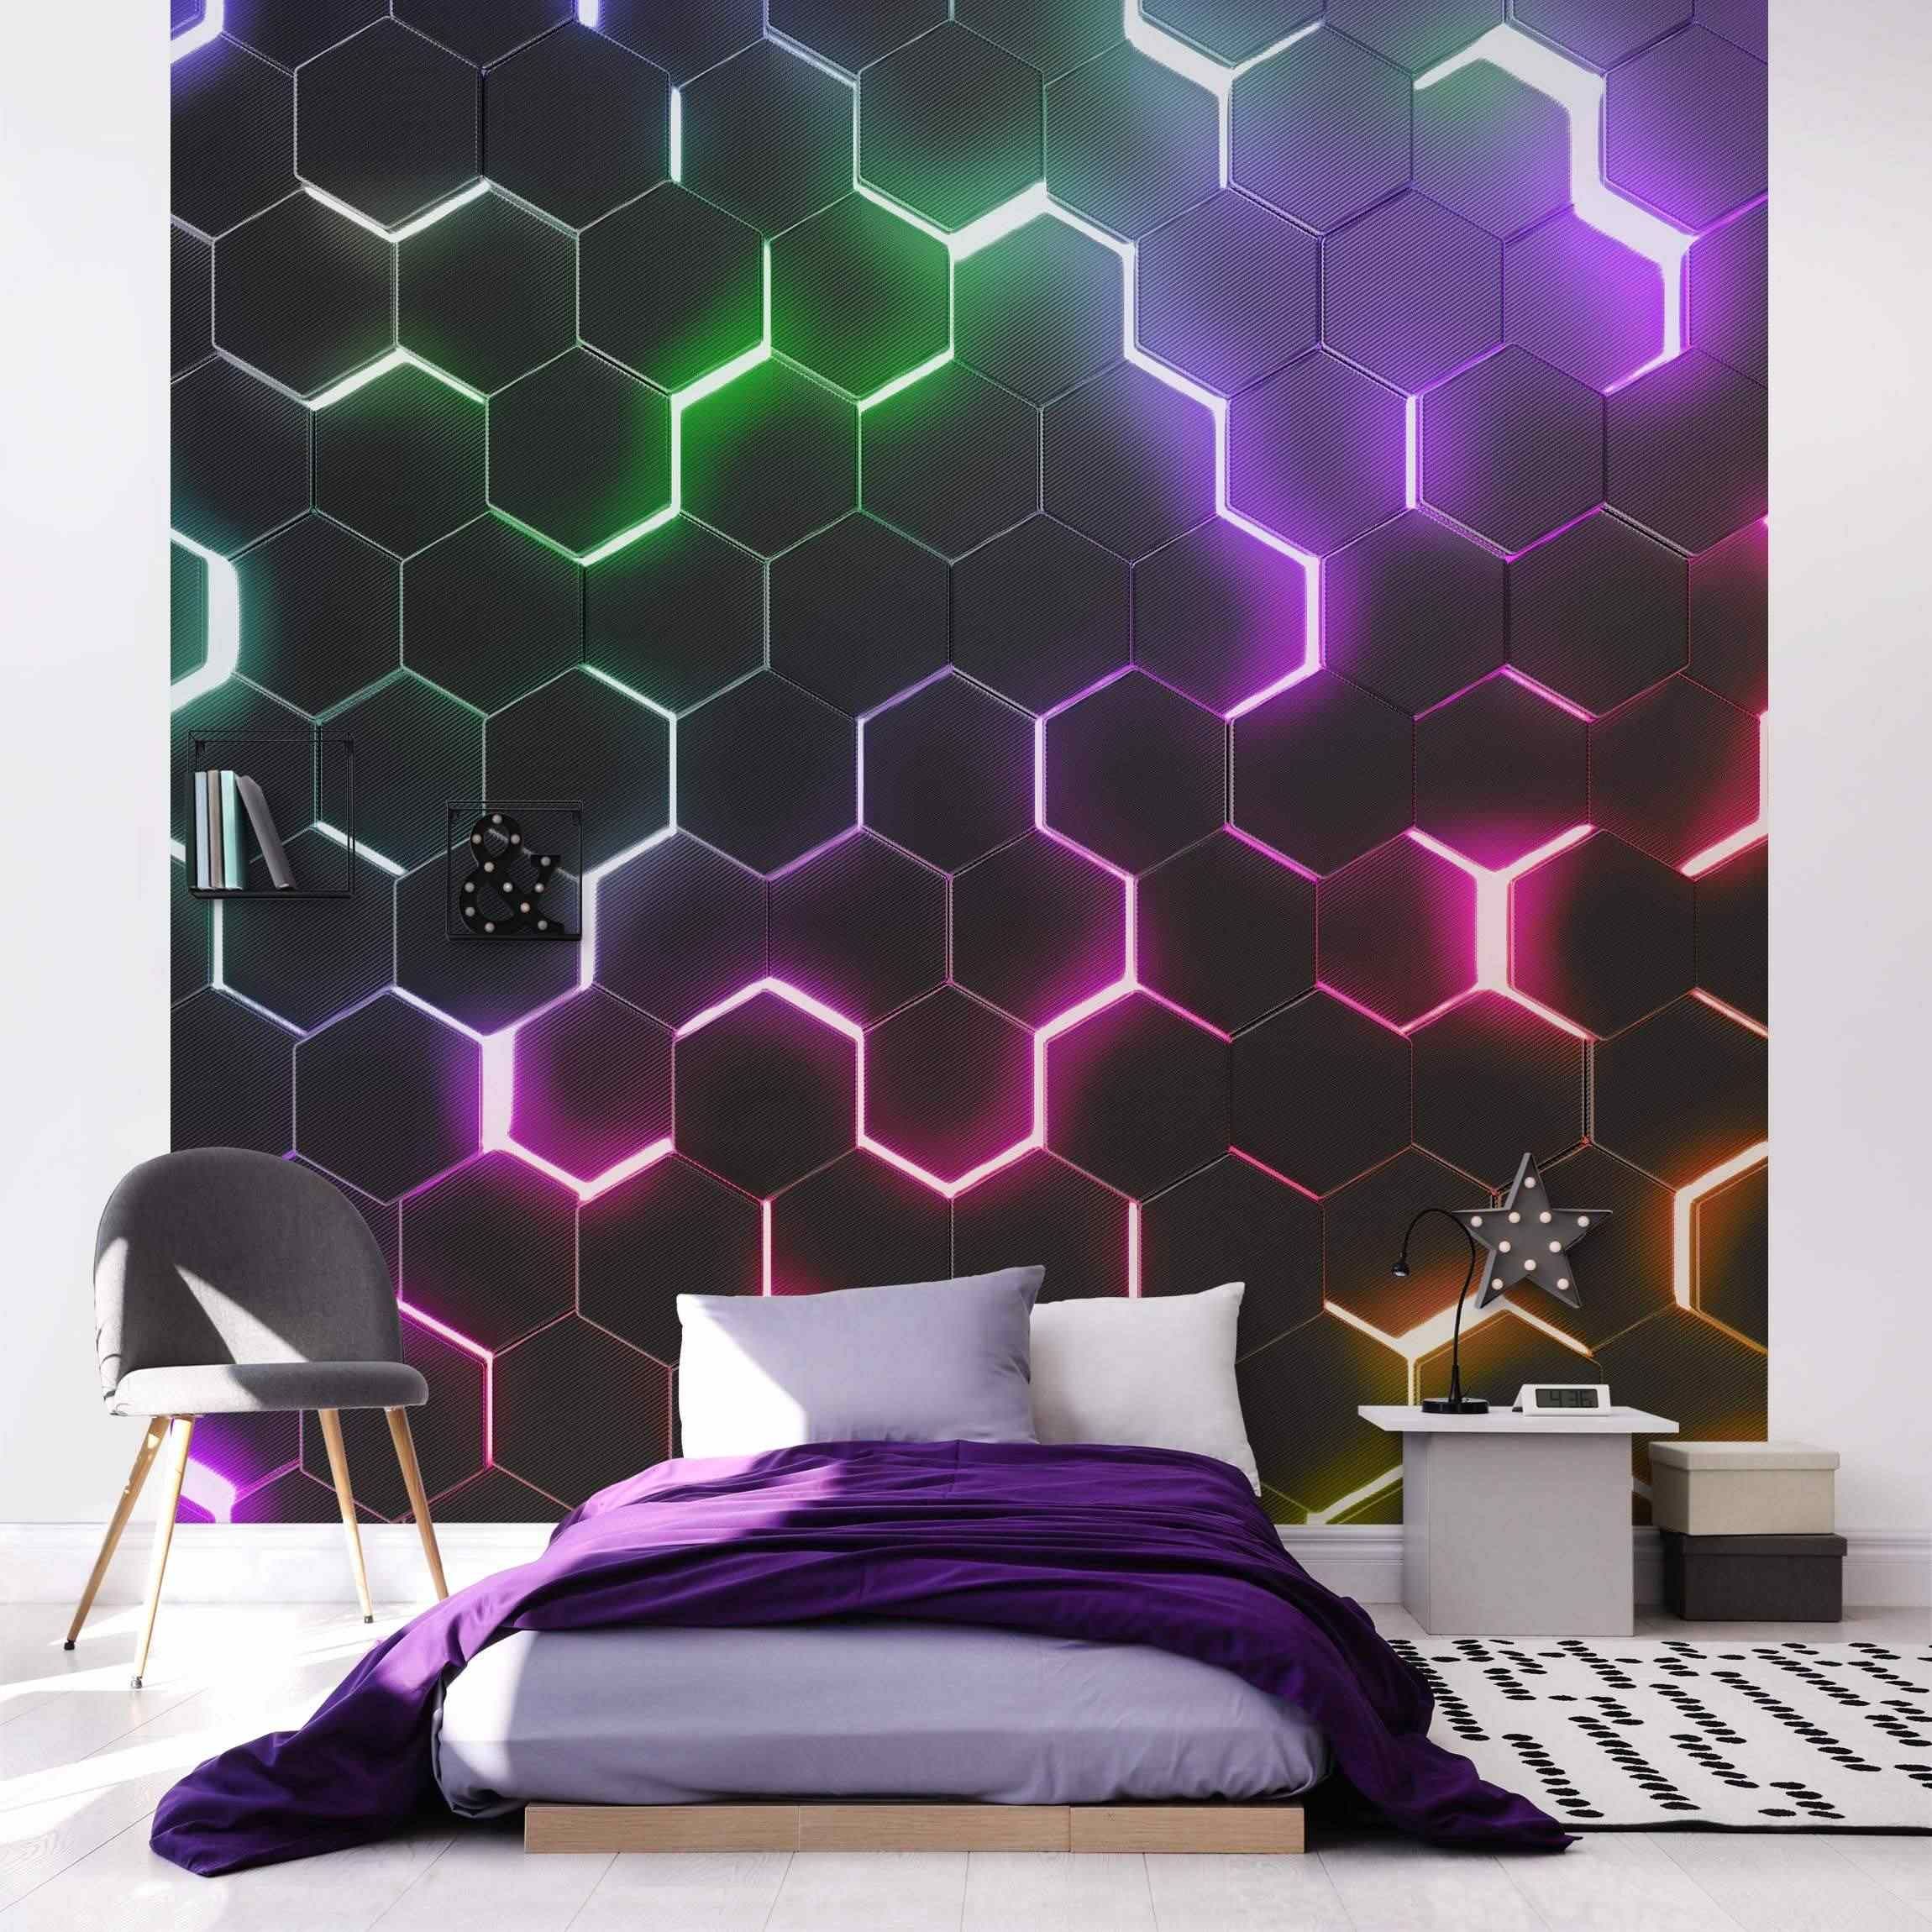 Fototapete Neonlicht Hexagone - Strukturierte mit